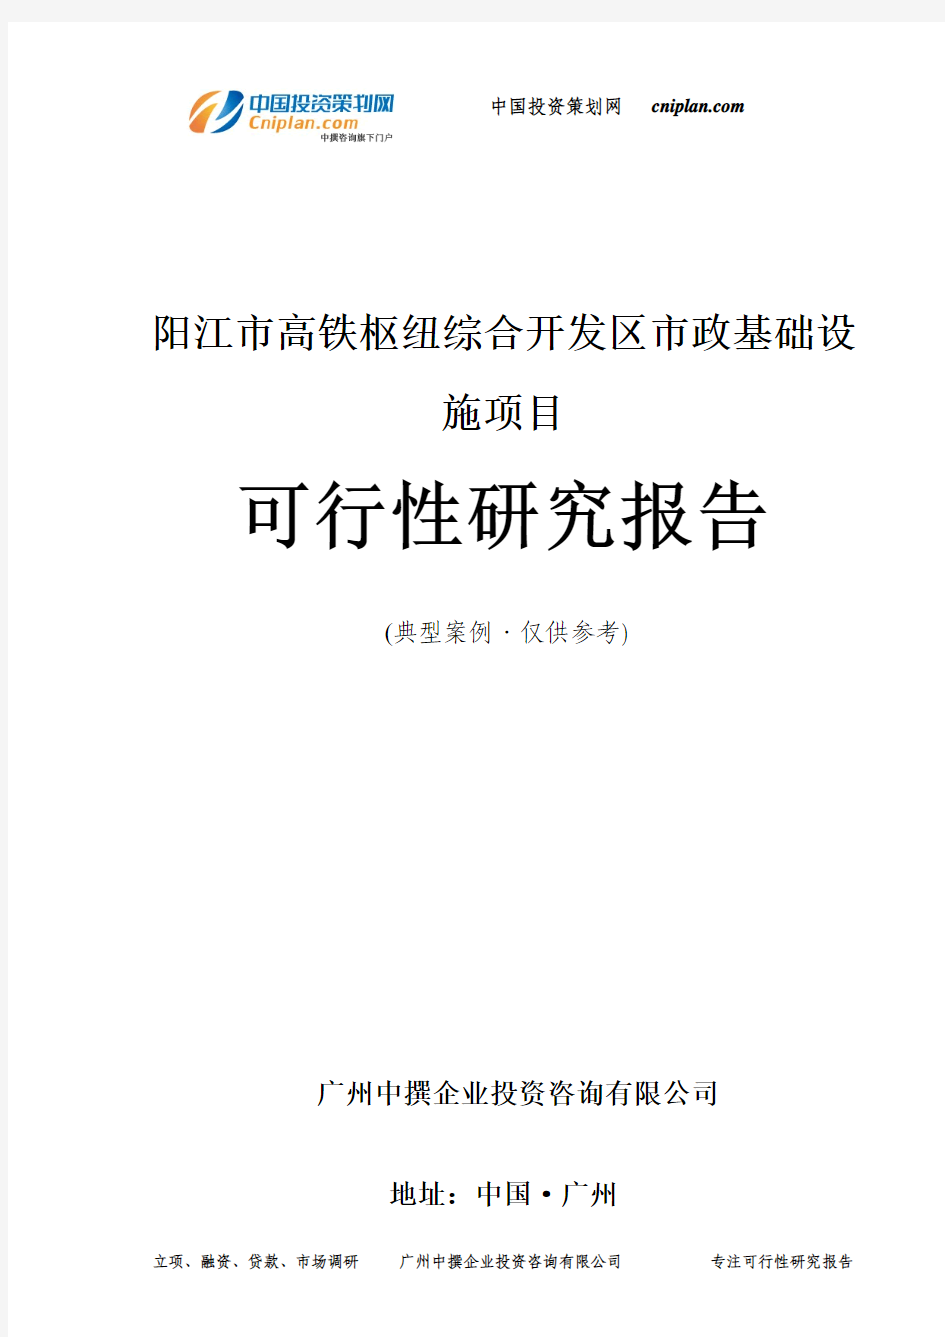 阳江市高铁枢纽综合开发区市政基础设施项目可行性研究报告-广州中撰咨询